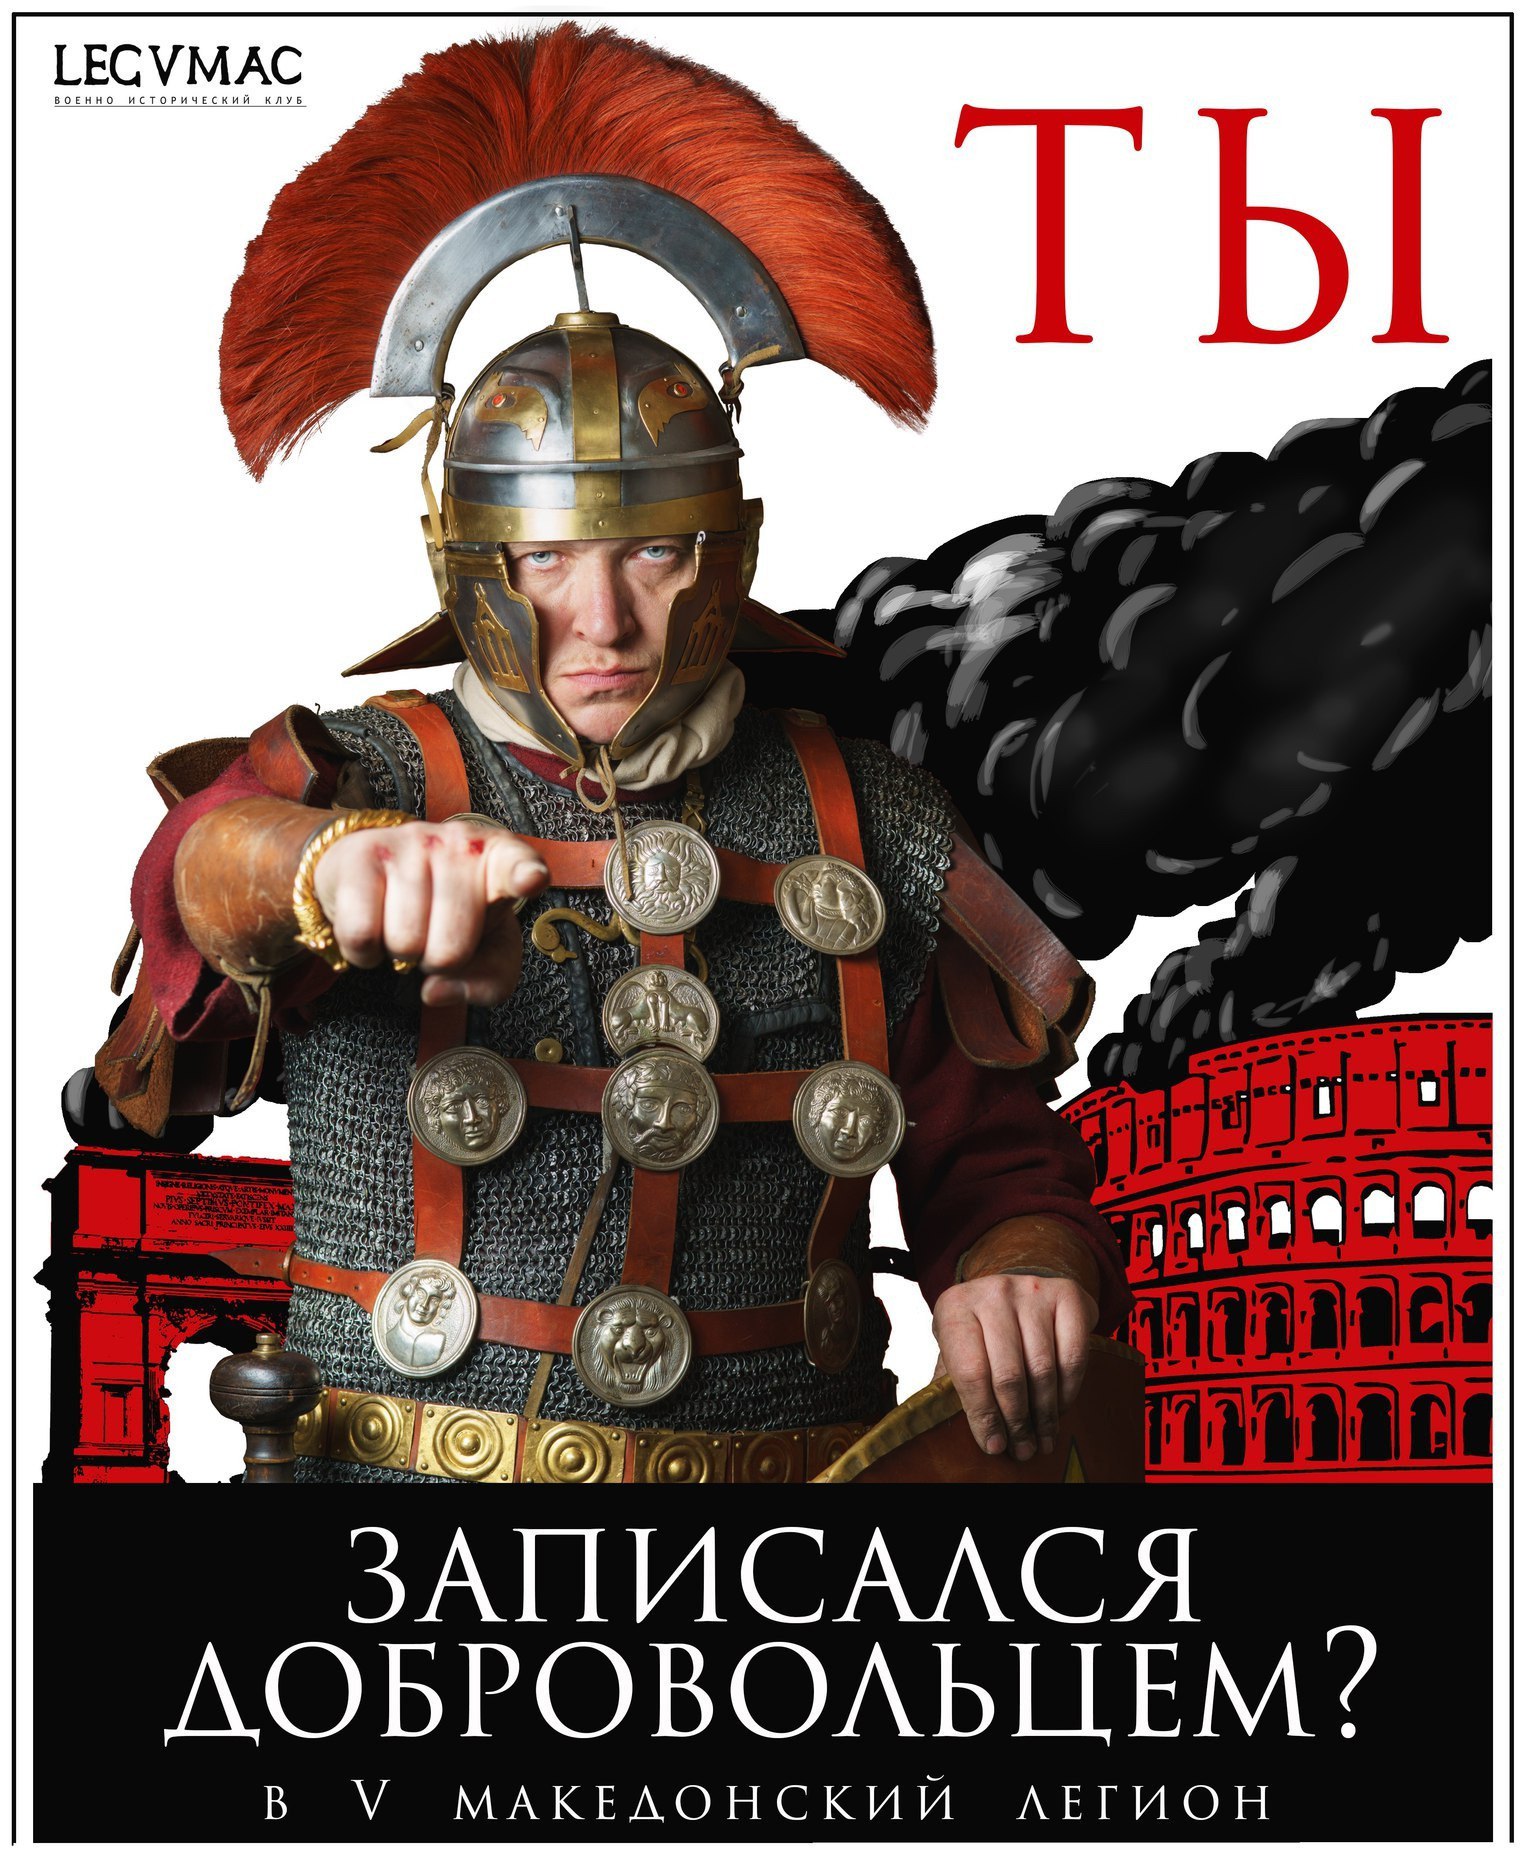 Вступай  пятый македонский легион